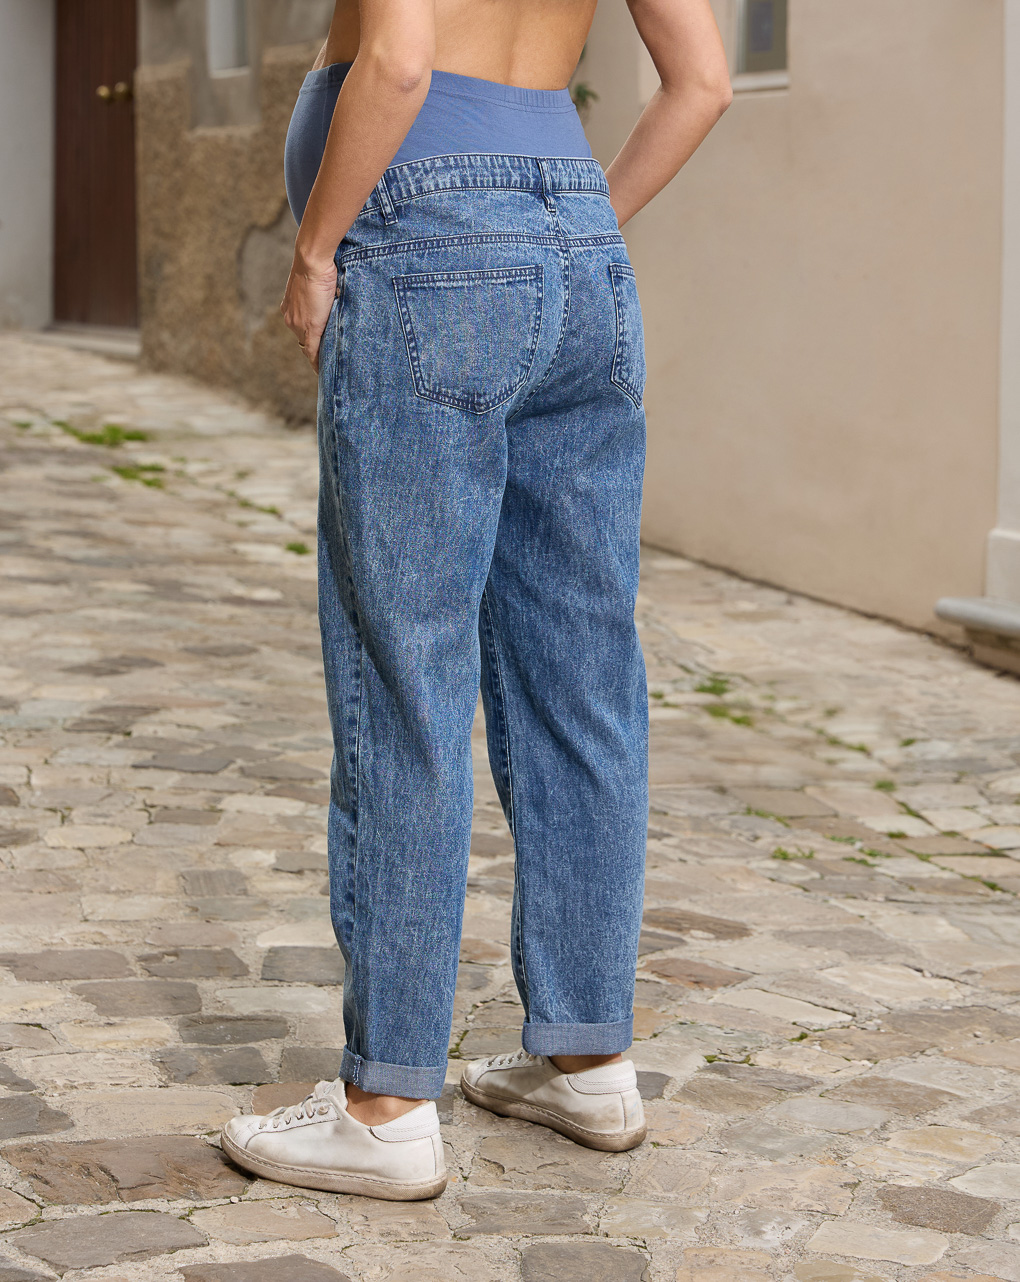 γυναικείο τζιν παντελόνι εγκυμοσύνης μπλε με σκισίματα - Prénatal